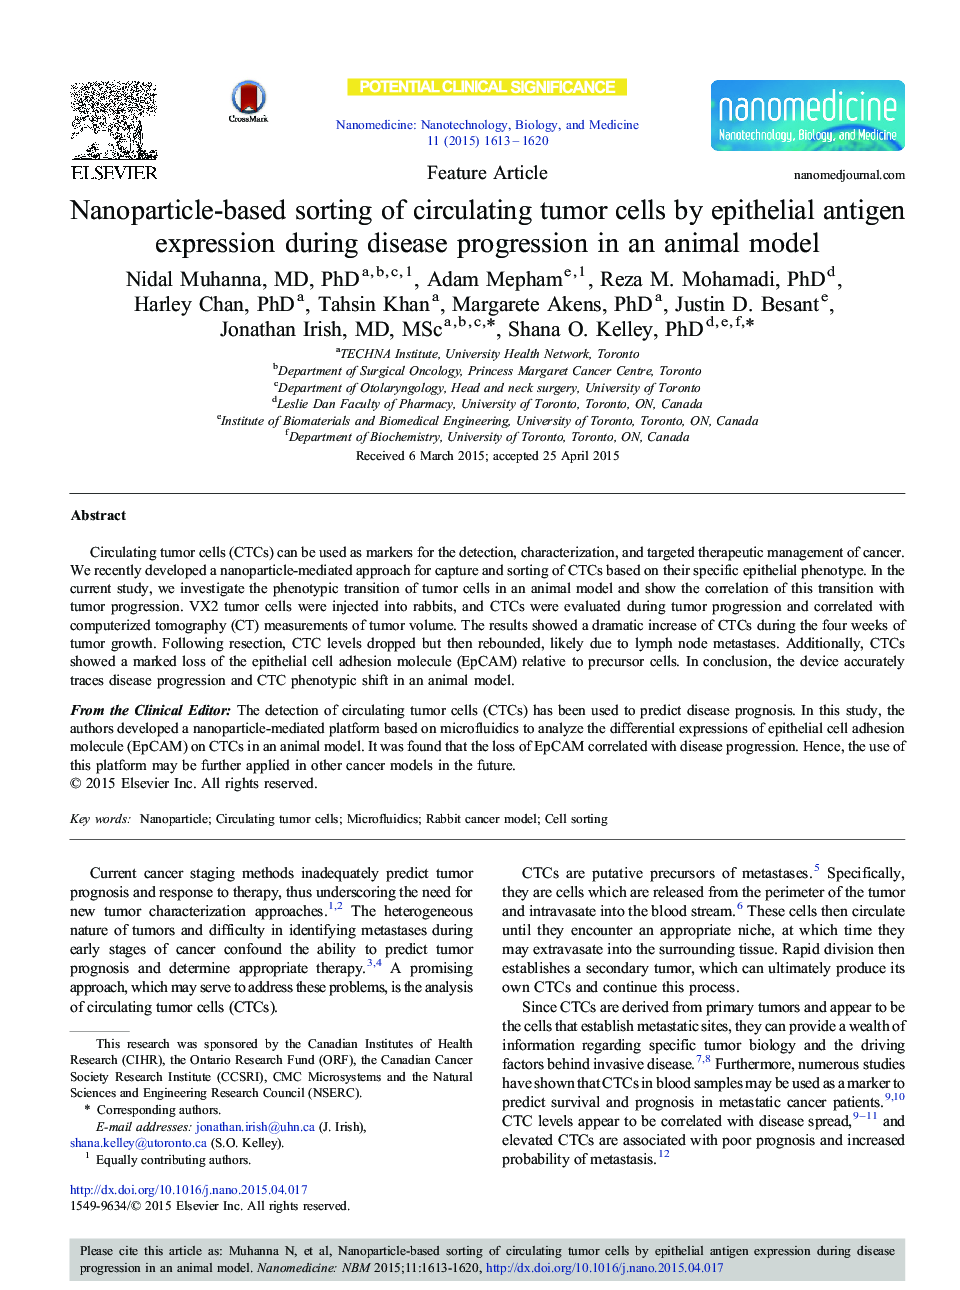 مرتب سازی سلول های توموری در معرض نانوذرات با بیان آنتیژن اپیتلیال در طی پیشرفت بیماری در یک مدل حیوانی 